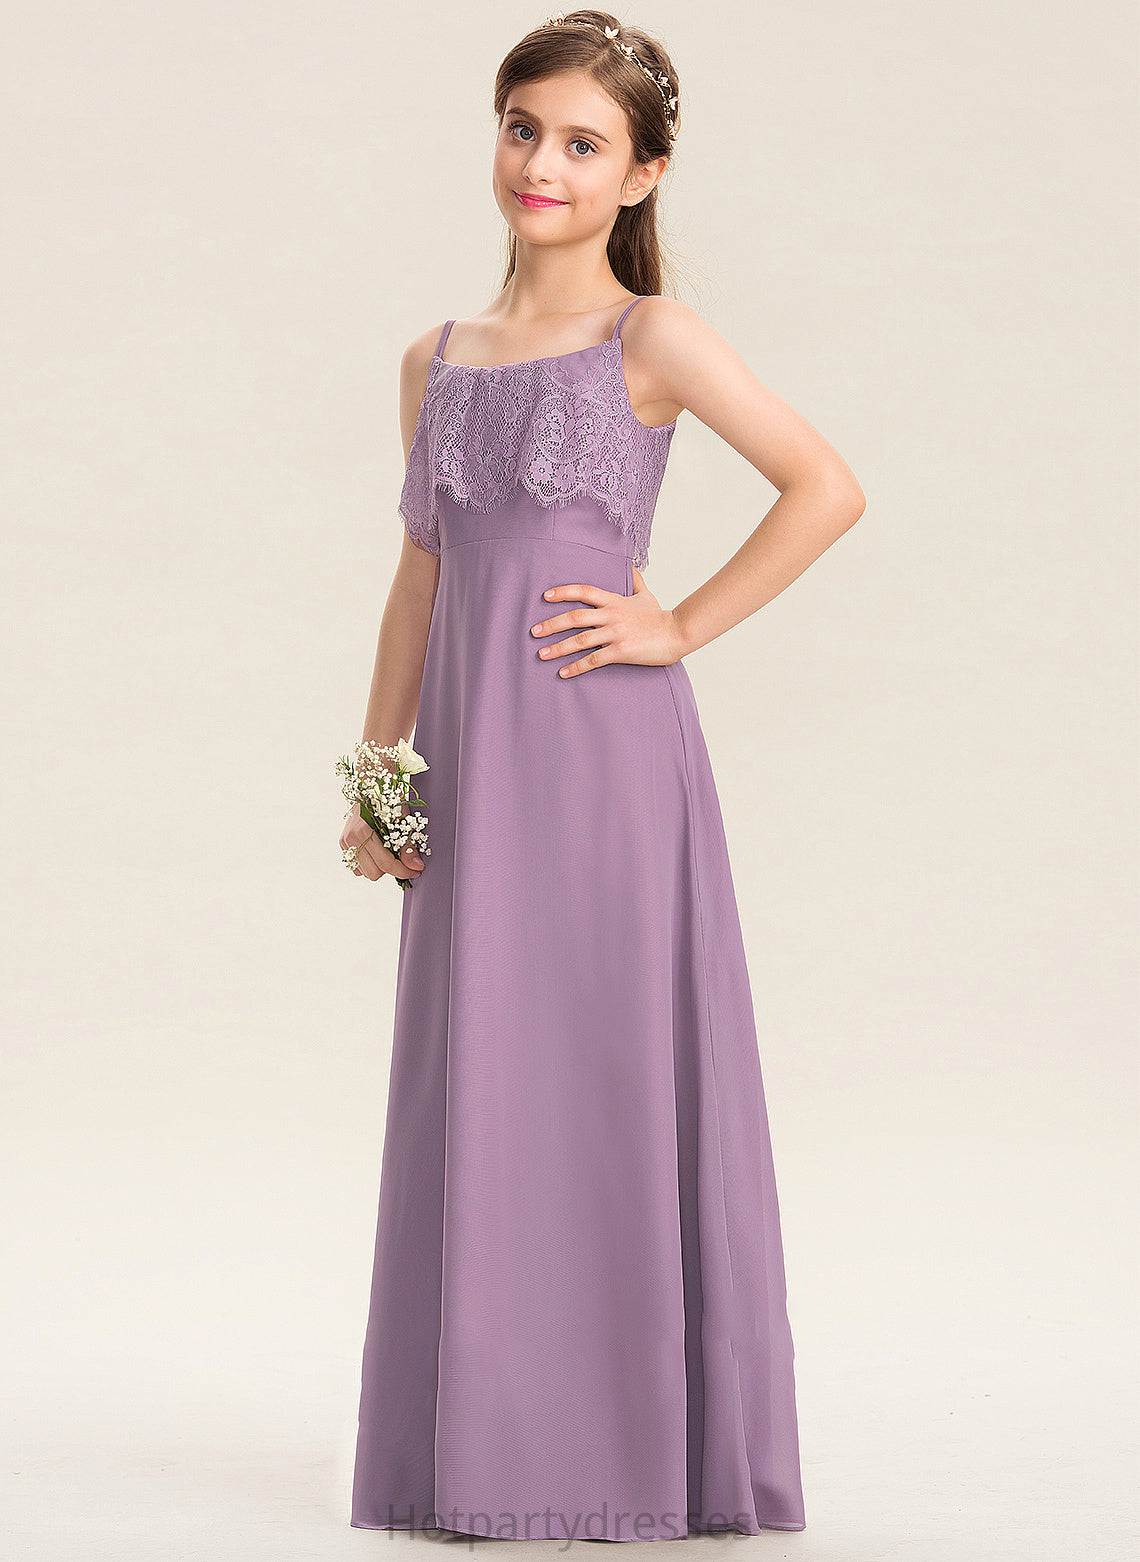 A-Line Alexandria Floor-Length Neckline Chiffon Square Junior Bridesmaid Dresses Lace